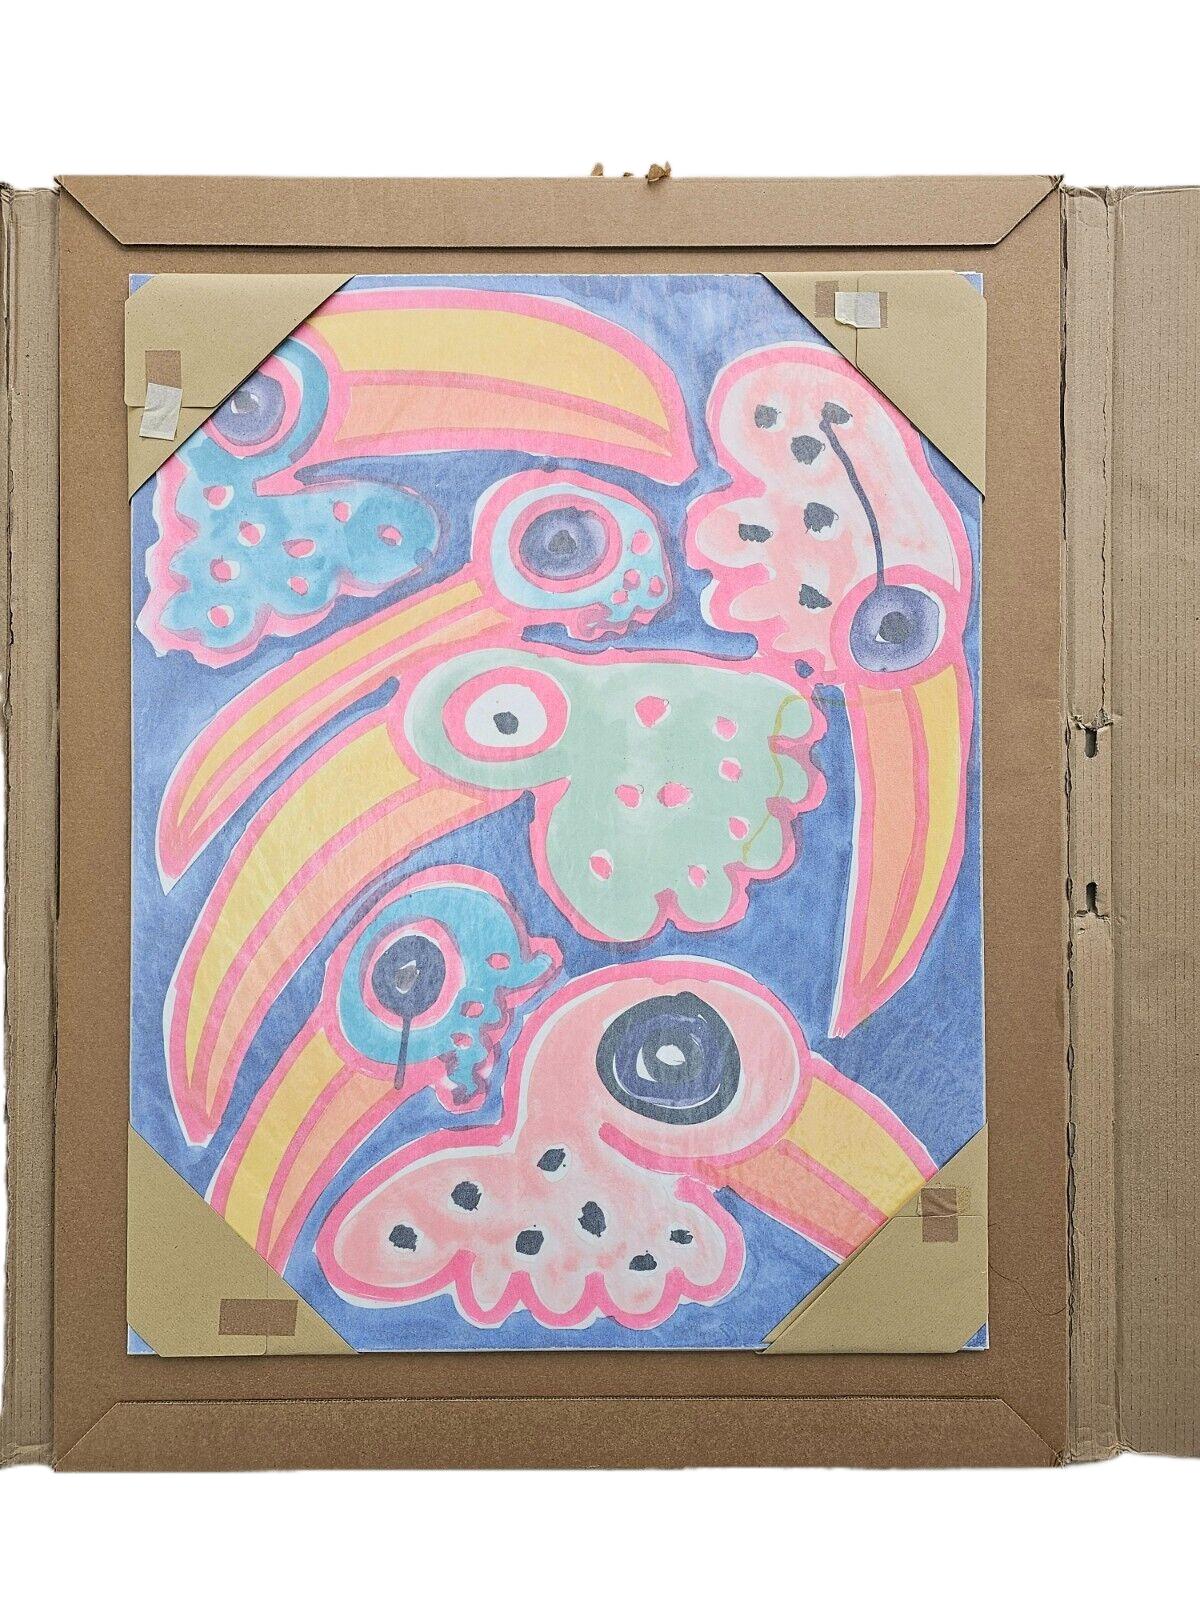 Toco Toucan Toucano (2020)
Edition de 150
Impression lithographique en neuf couleurs sur Somerset Velvet 300 g/m². 
Signé, numéroté et daté par l'artiste


Katherine Bernhardt est une artiste américaine contemporaine connue pour ses peintures